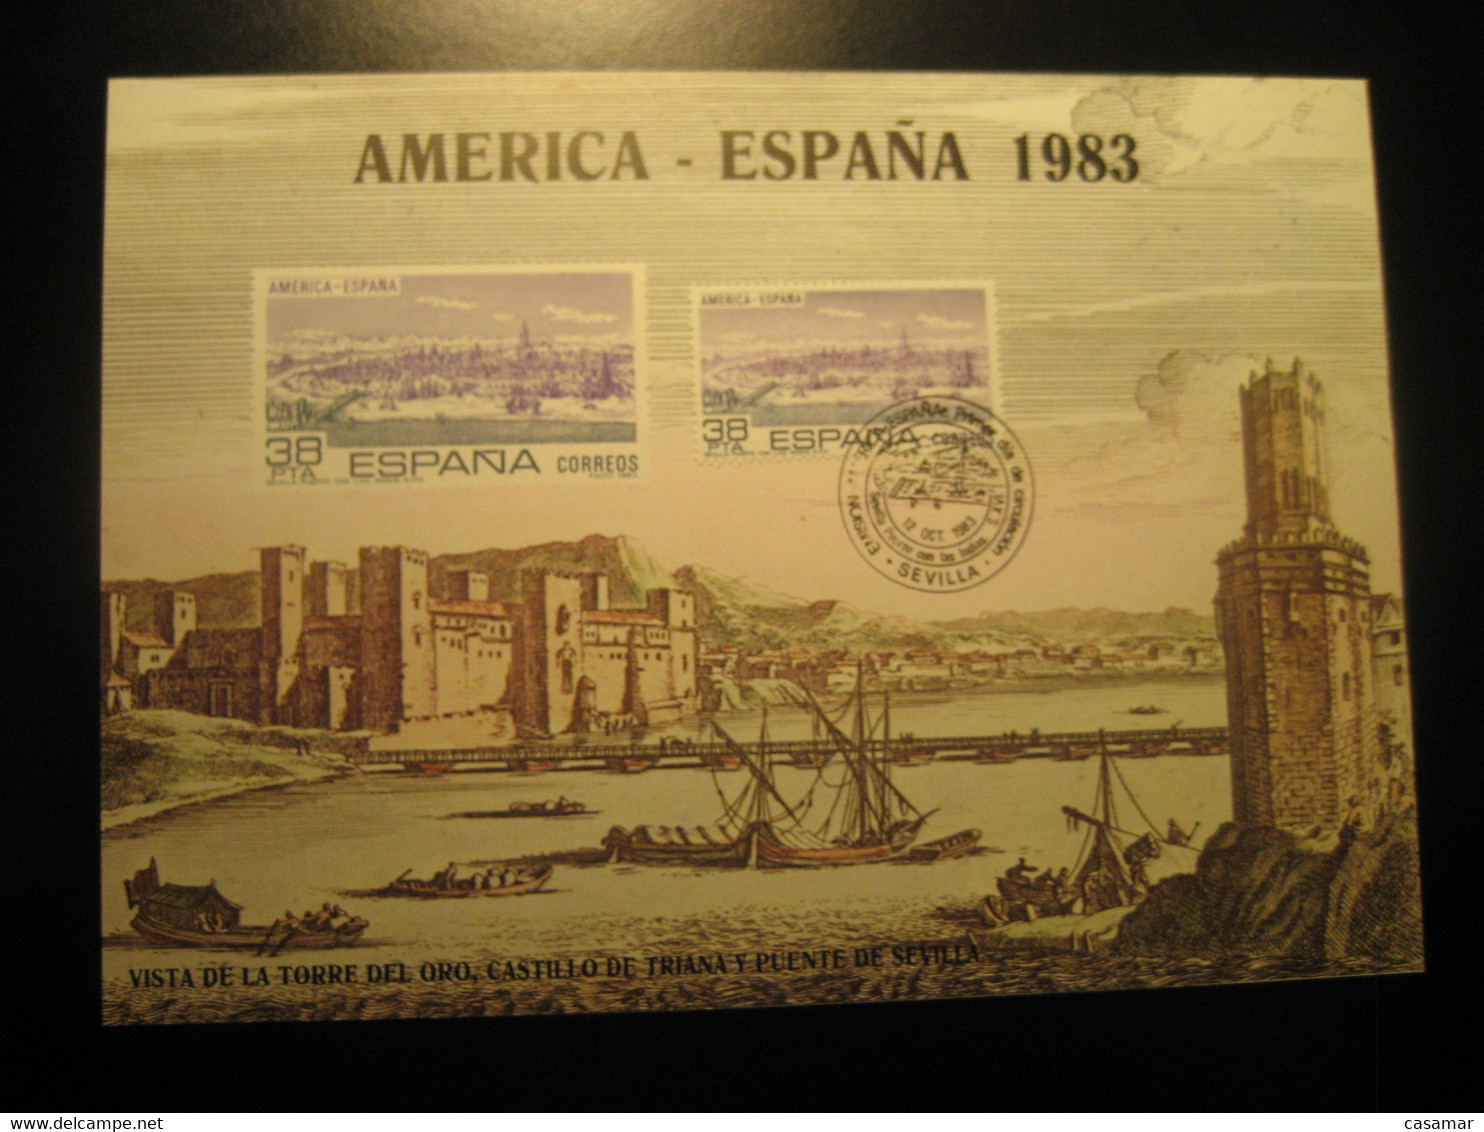 SEVILLA 1983 Puerto Con Las Indias Torre Del Oro Bridge Castle Cancel Big Card Proof SPAIN Document - Ensayos & Reimpresiones